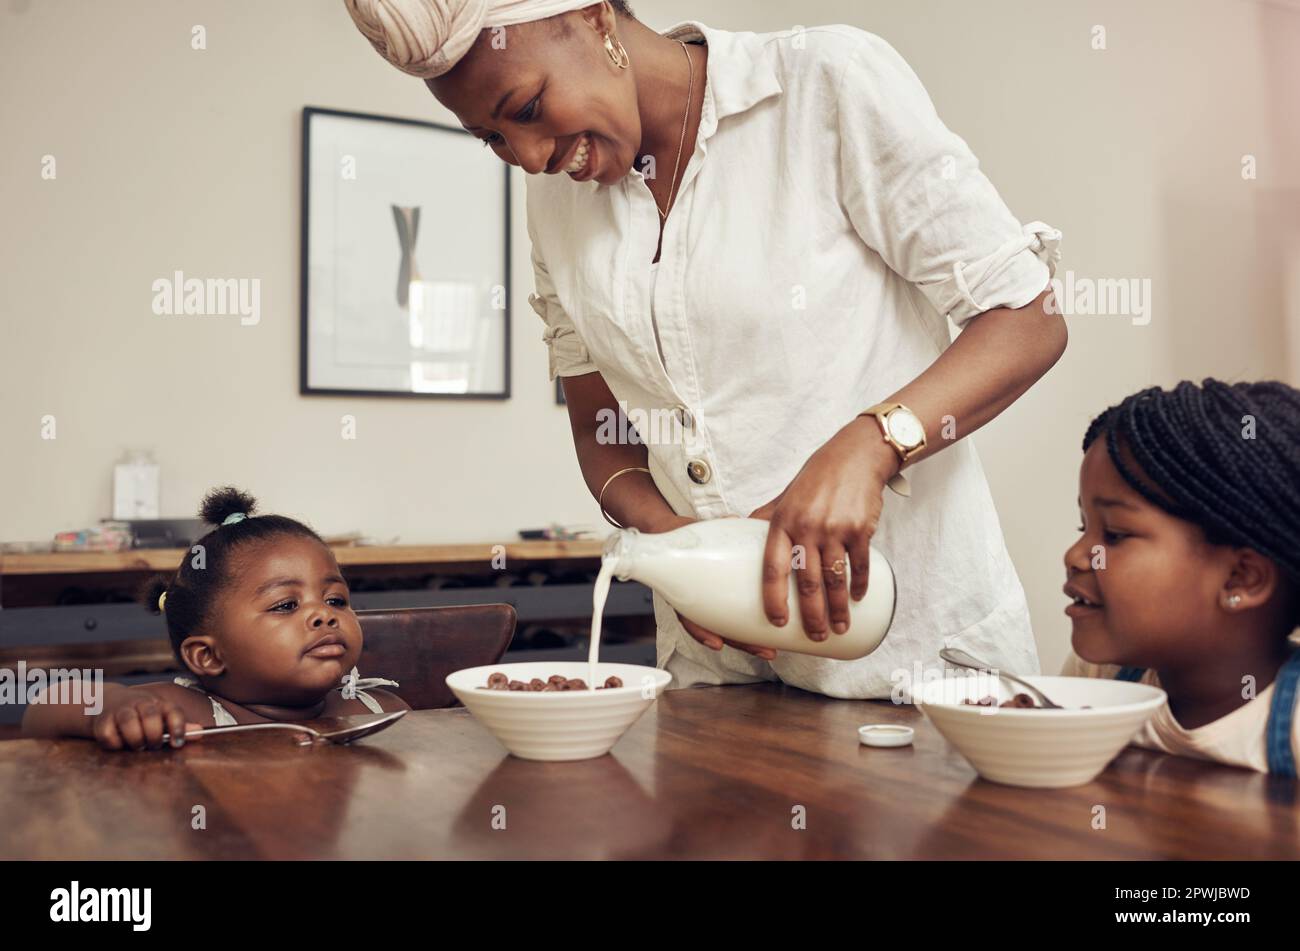 Beginnen Sie Ihren Morgen mit einer gesunden und leckeren Mahlzeit. Eine junge Mutter, die zu Hause Cornflakes für ihre beiden liebenswerten Töchter zubereitete Stockfoto